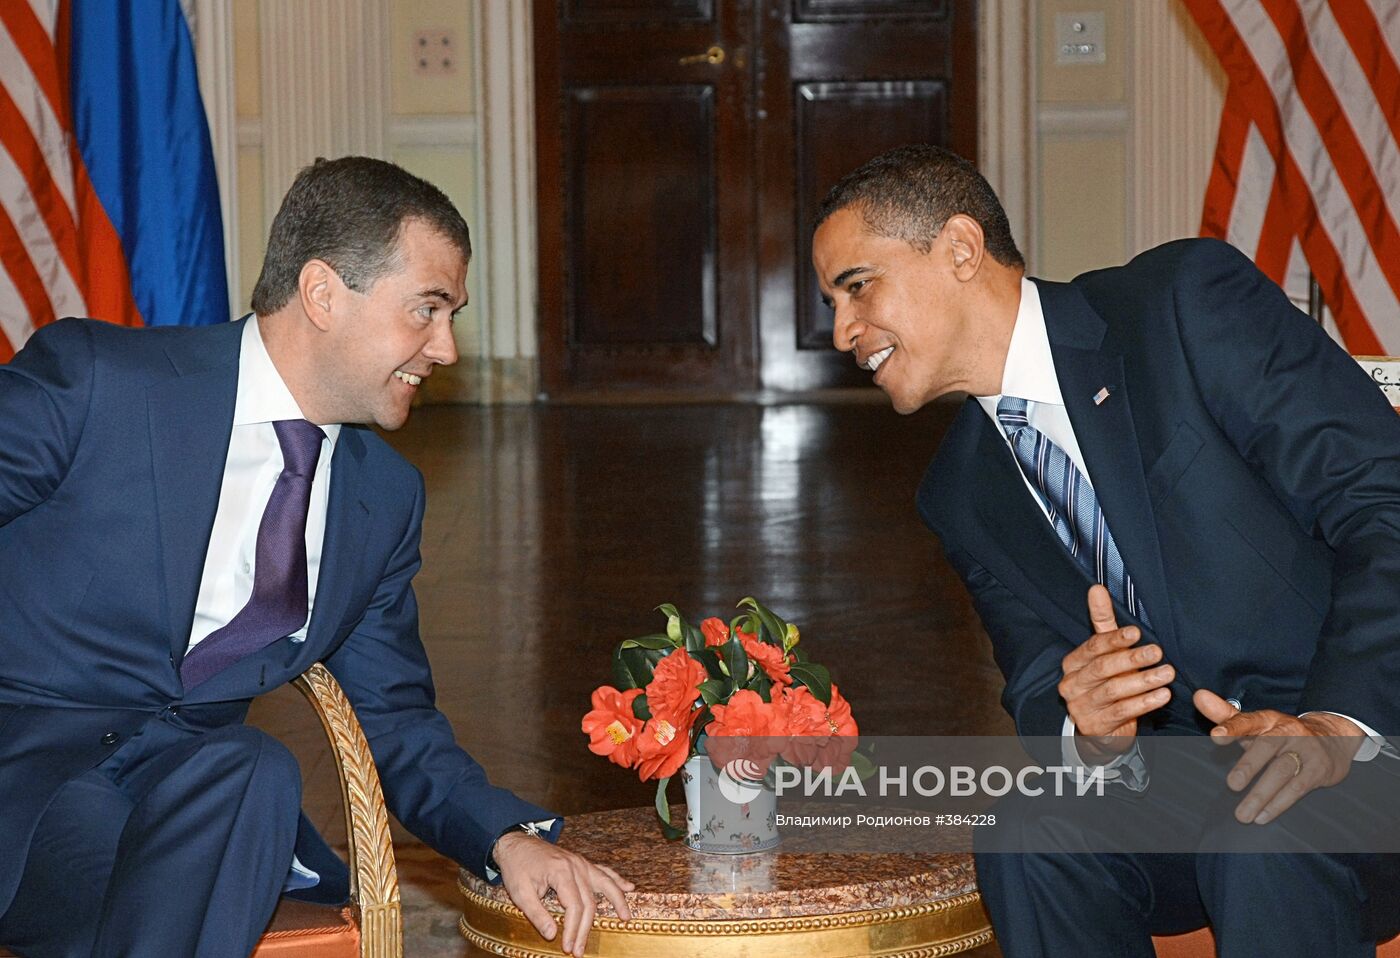 Встреча президента России Д. Медведева и президента США Б. Обамы